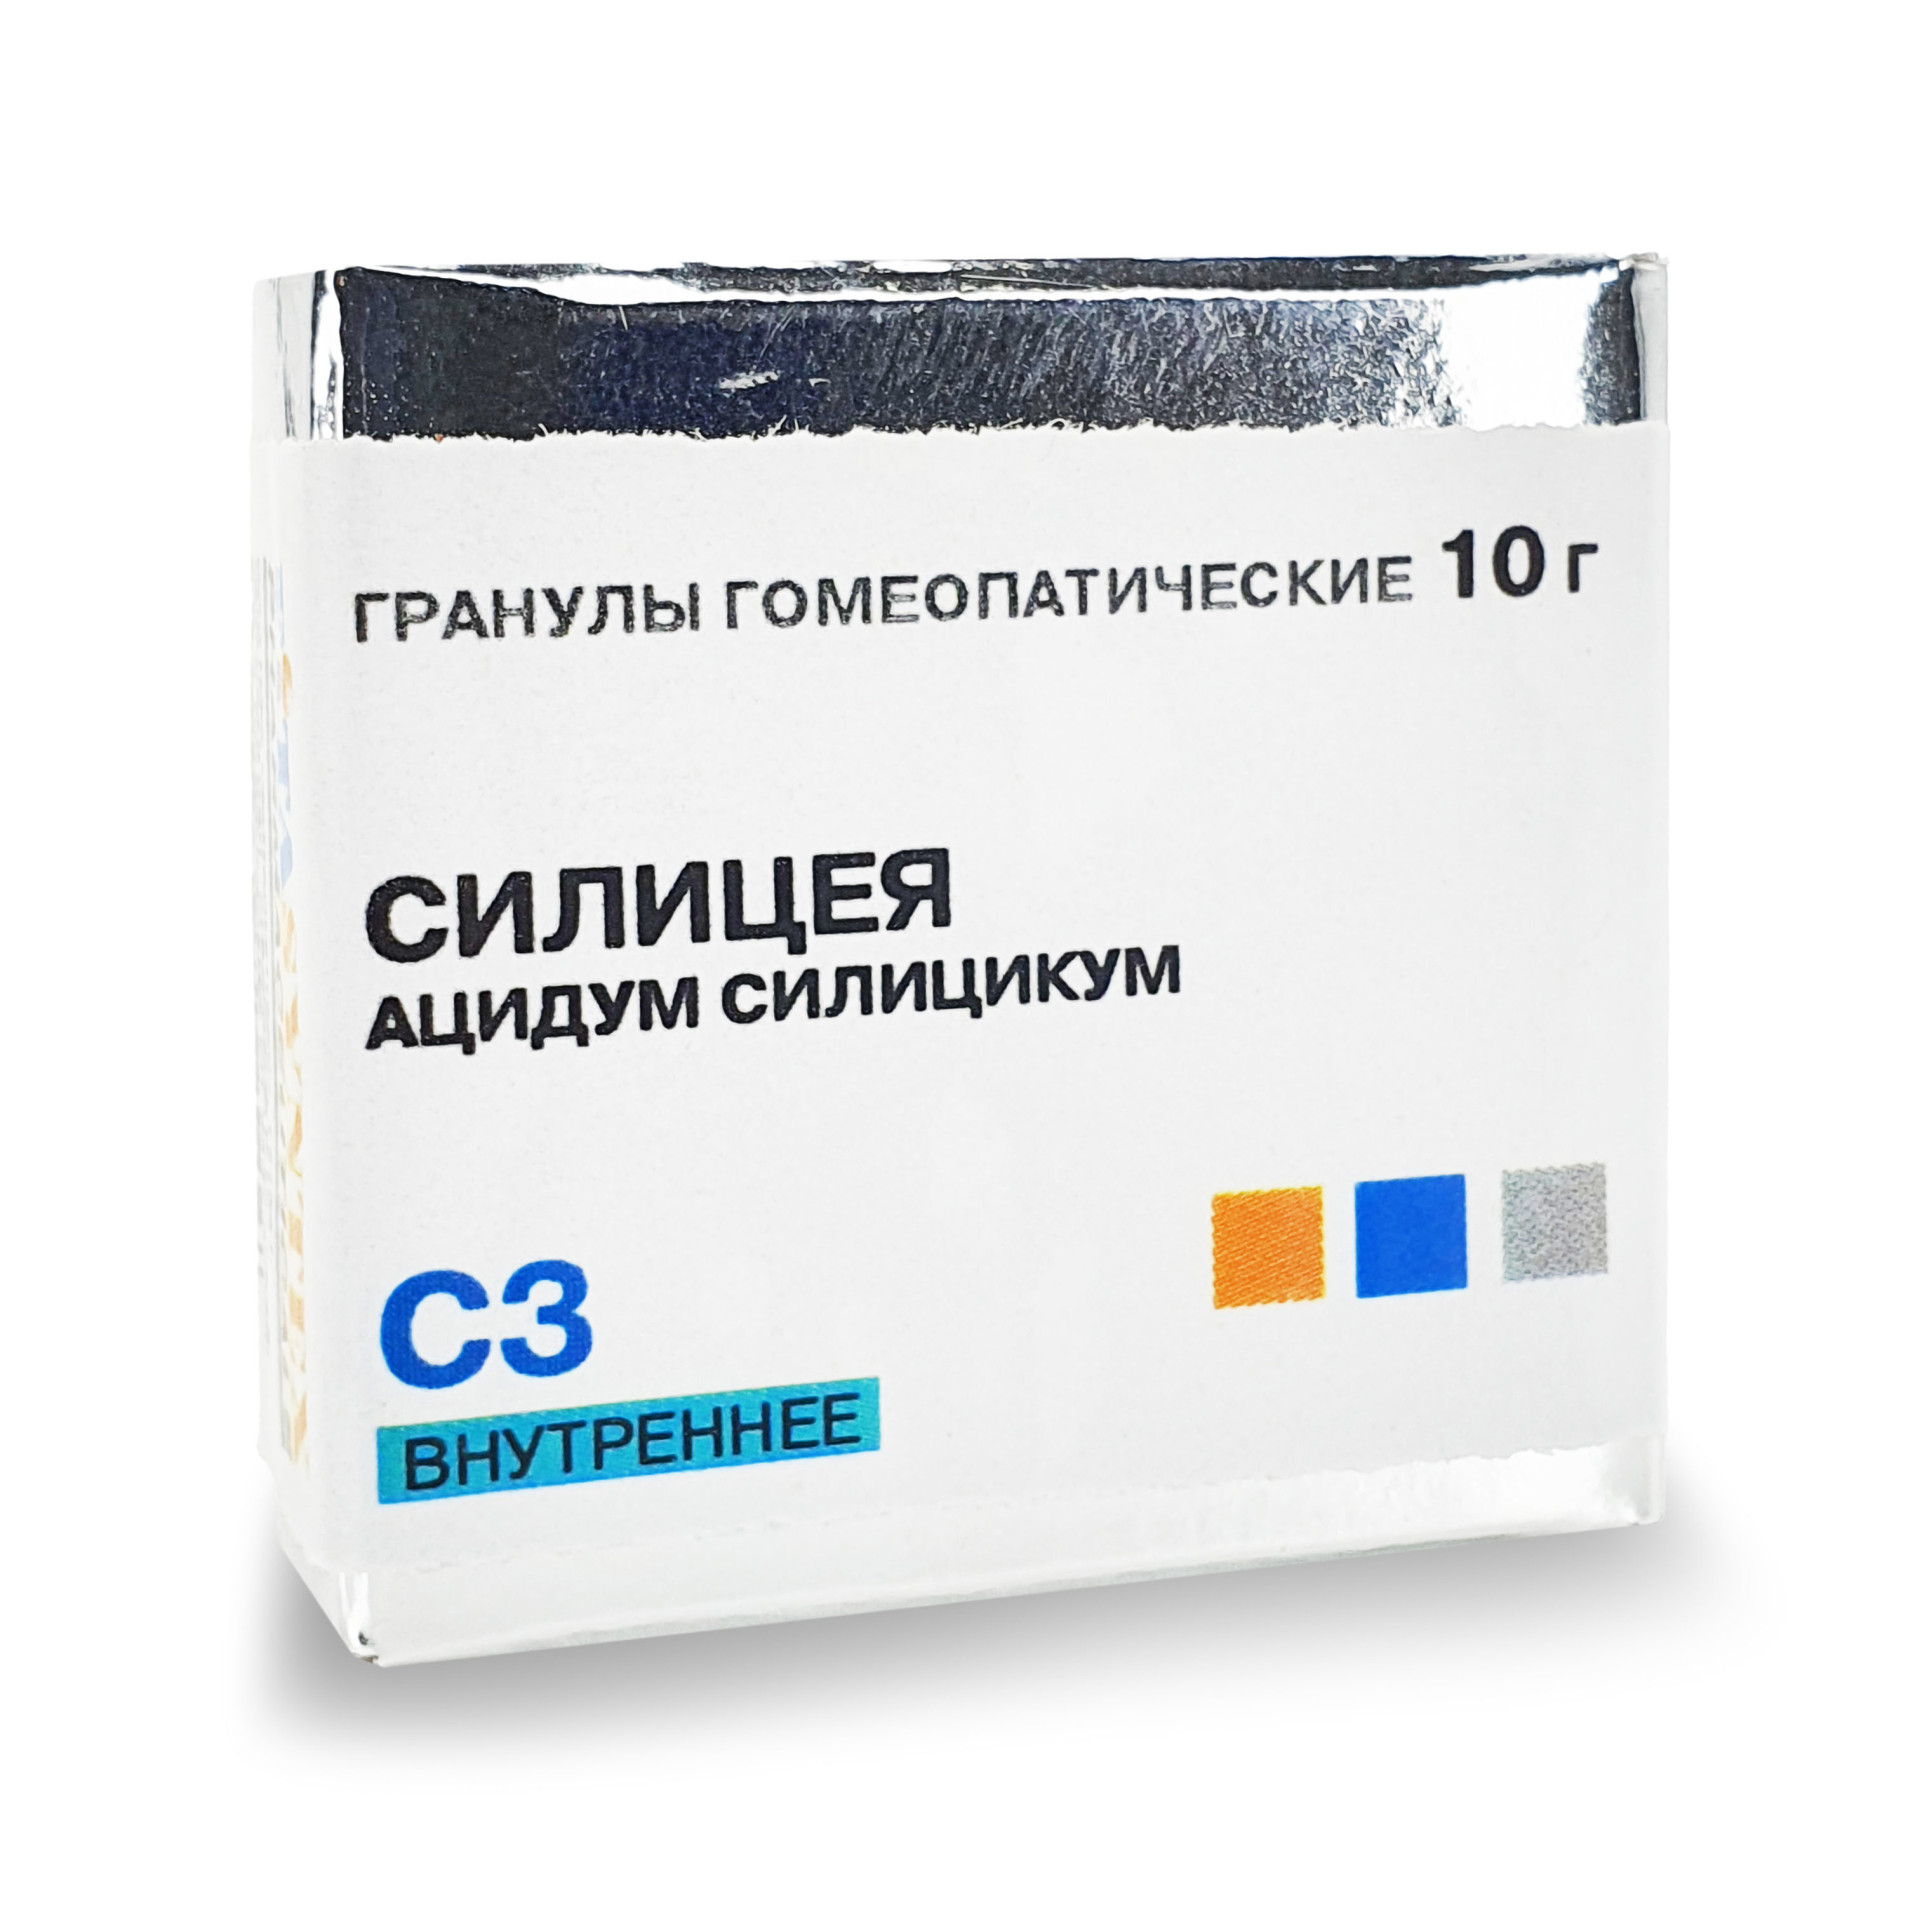 Силицея (Ацидум Силицикум) С-3 гранулы 10г купить в Москве по цене от 0 рублей